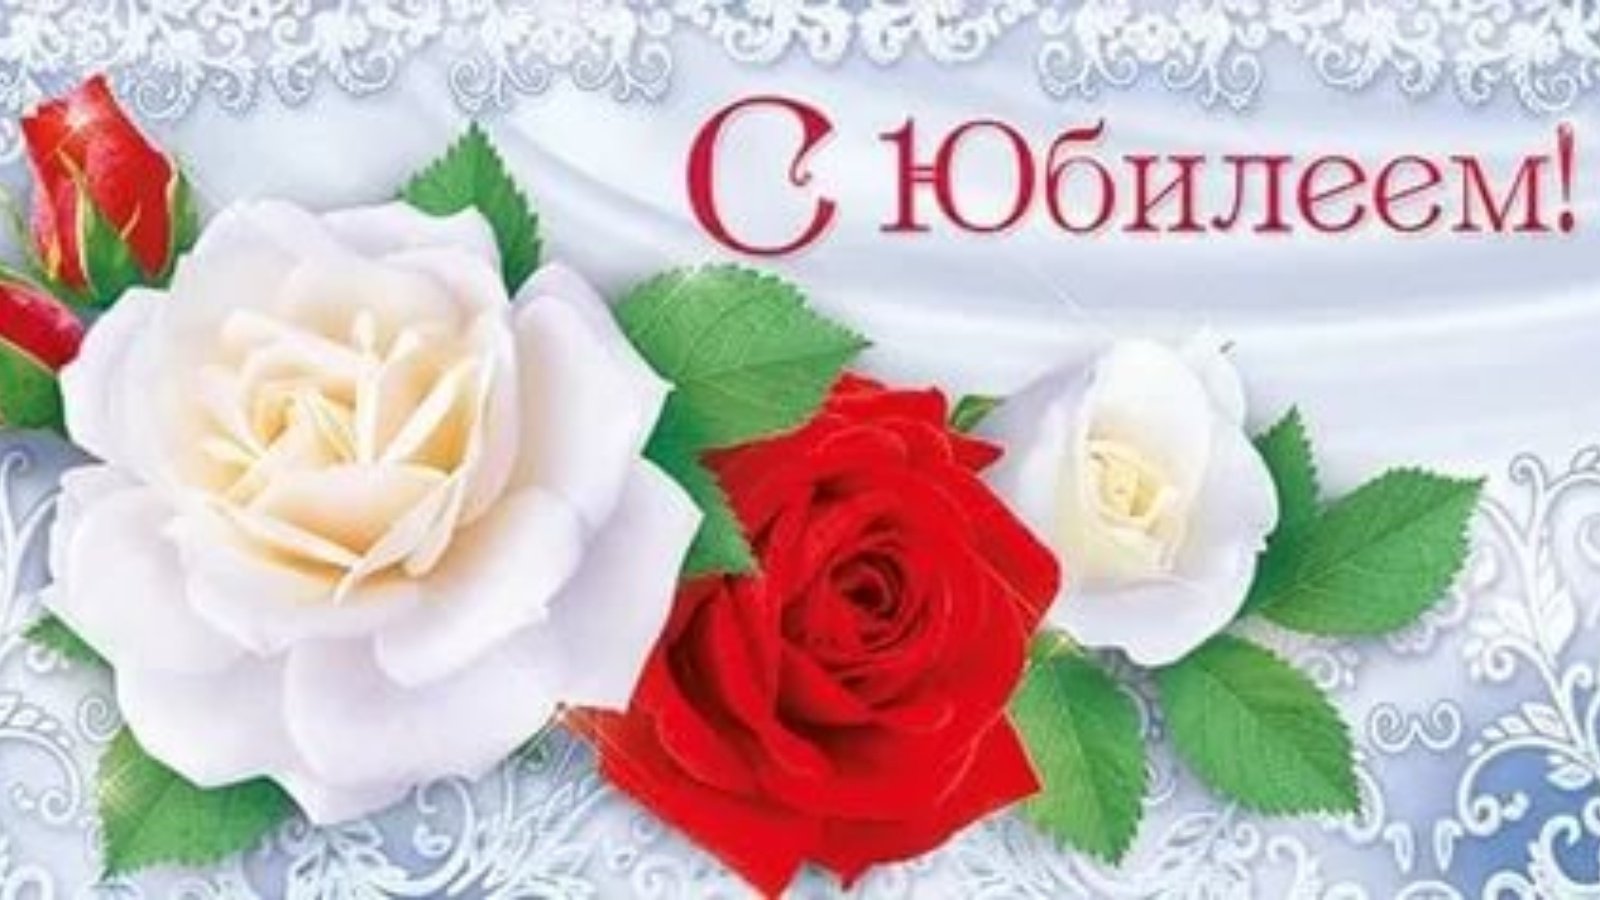 Коллектив Вогнемского дома социального обслуживания поздравляет Дегтереву Валентину Алексеевну с юбилеем!!!